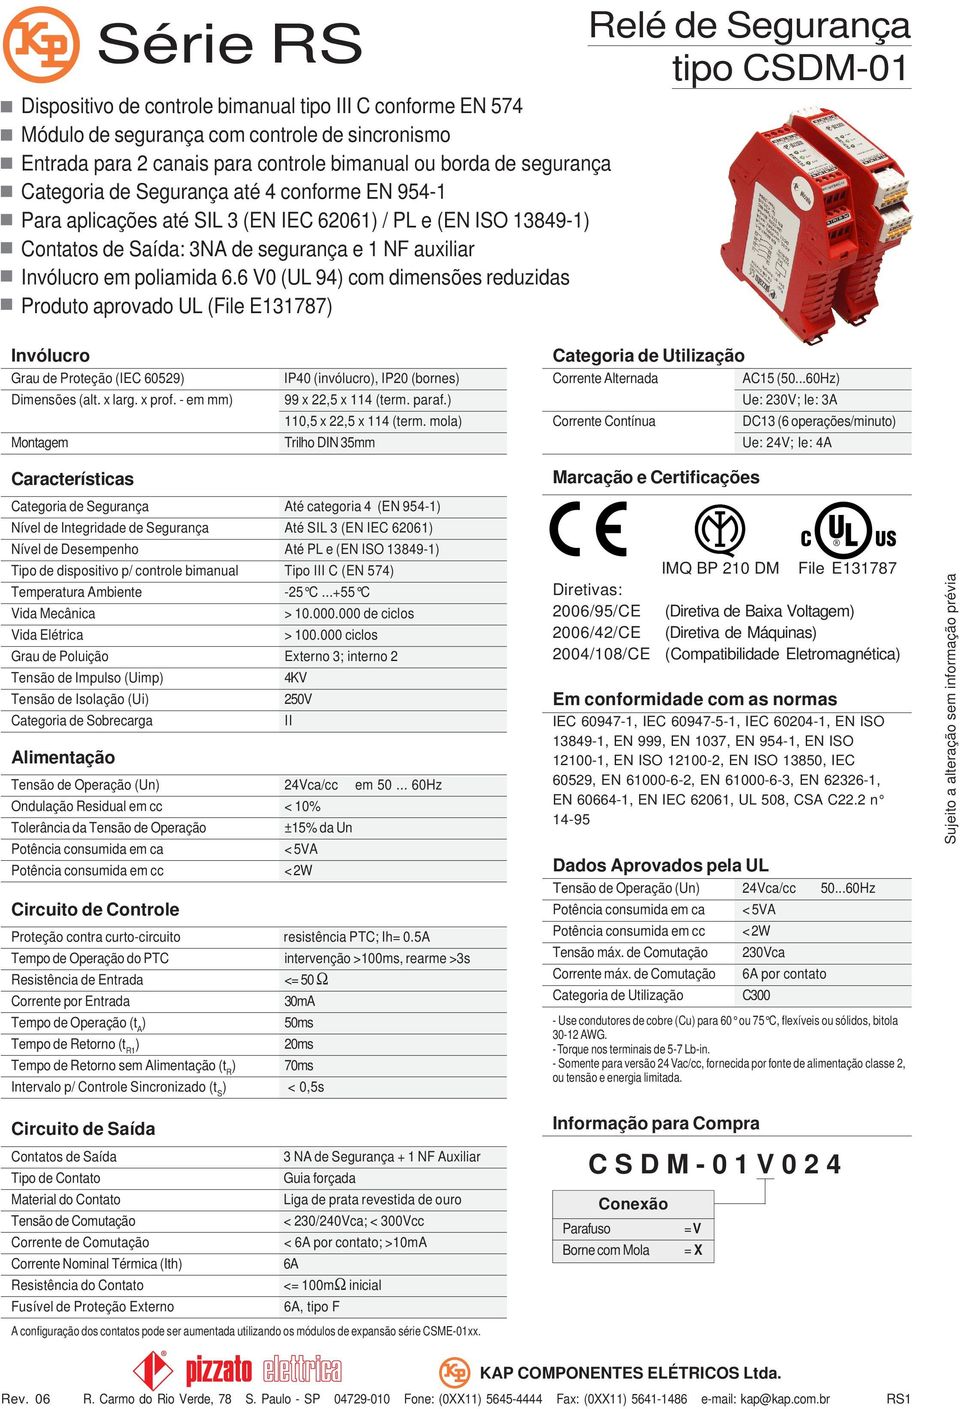 6 V0 (UL 94 com dimensões reduzidas Produto aprovado UL (File E131787 tipo CSDM-01 Invólucro Grau de Proteção (IEC 60529 Dimensões (alt. x larg. x prof.